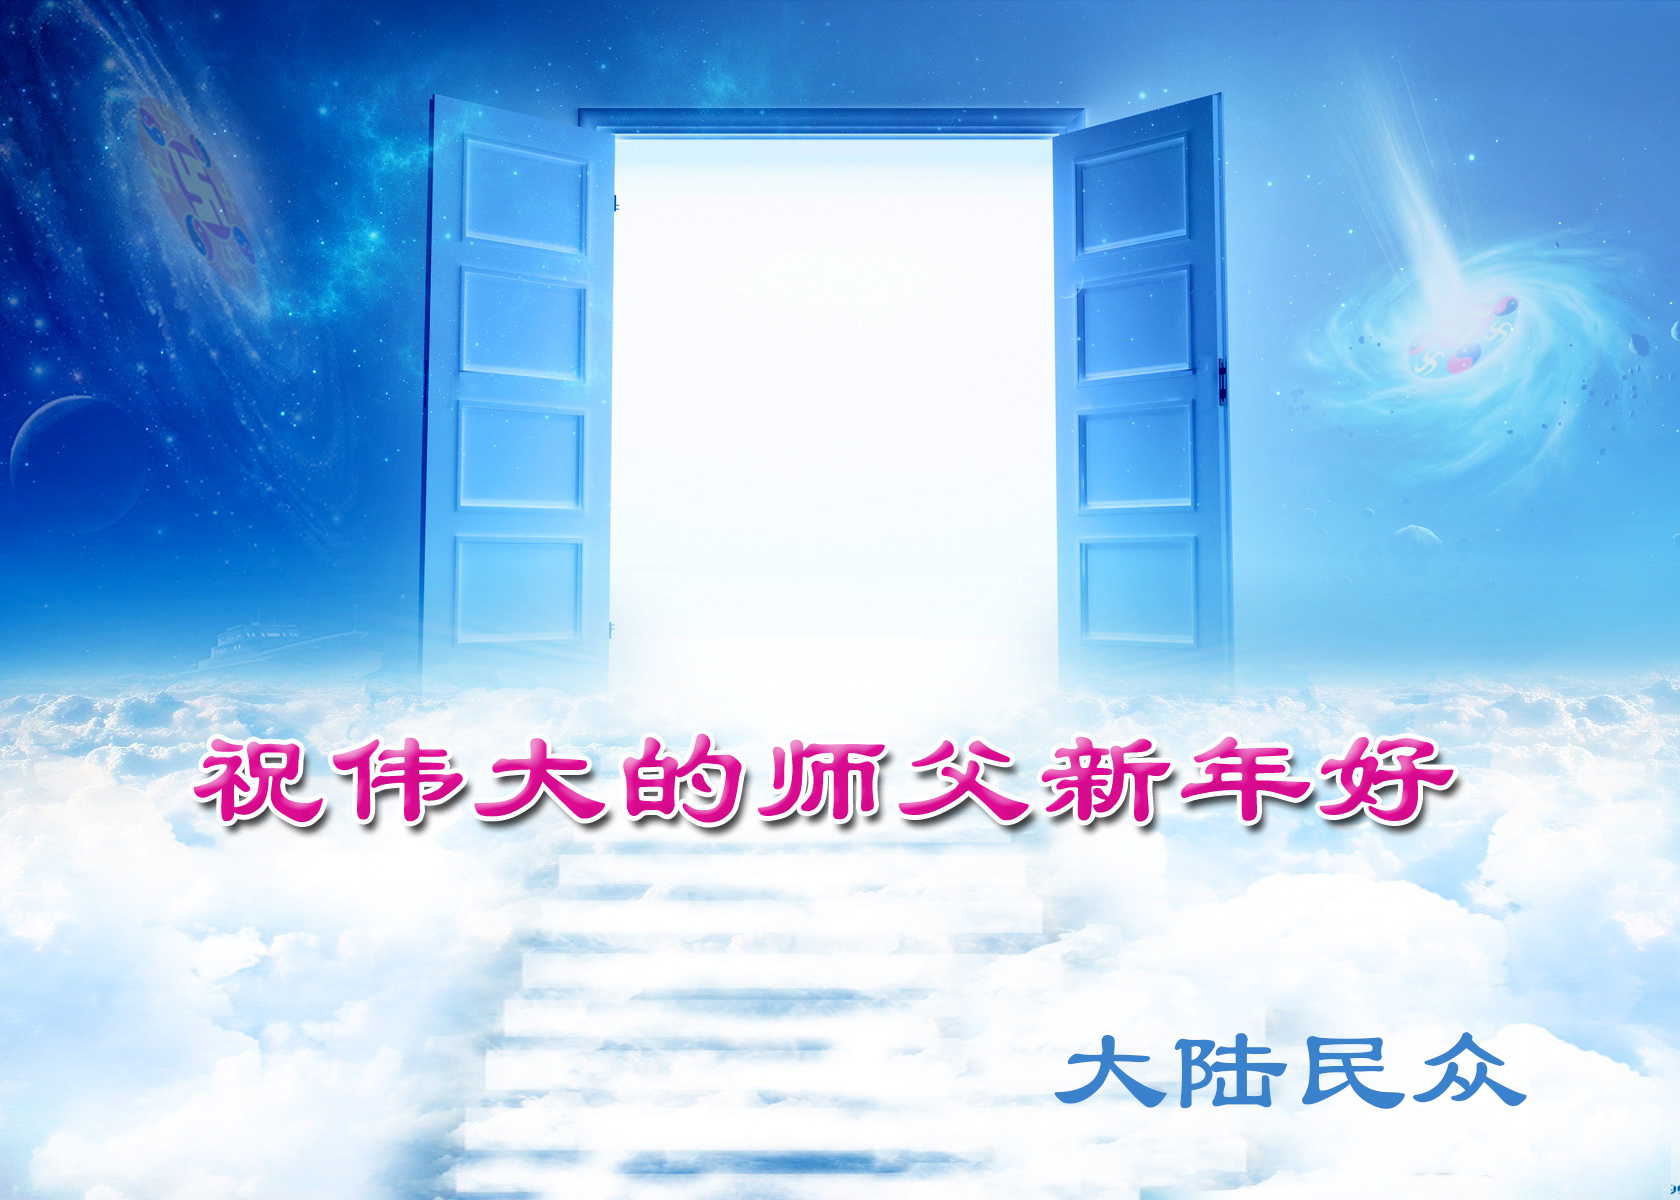 Image for article Les gens en Chine souhaitent au fondateur du Falun Dafa un bon Nouvel An chinois !